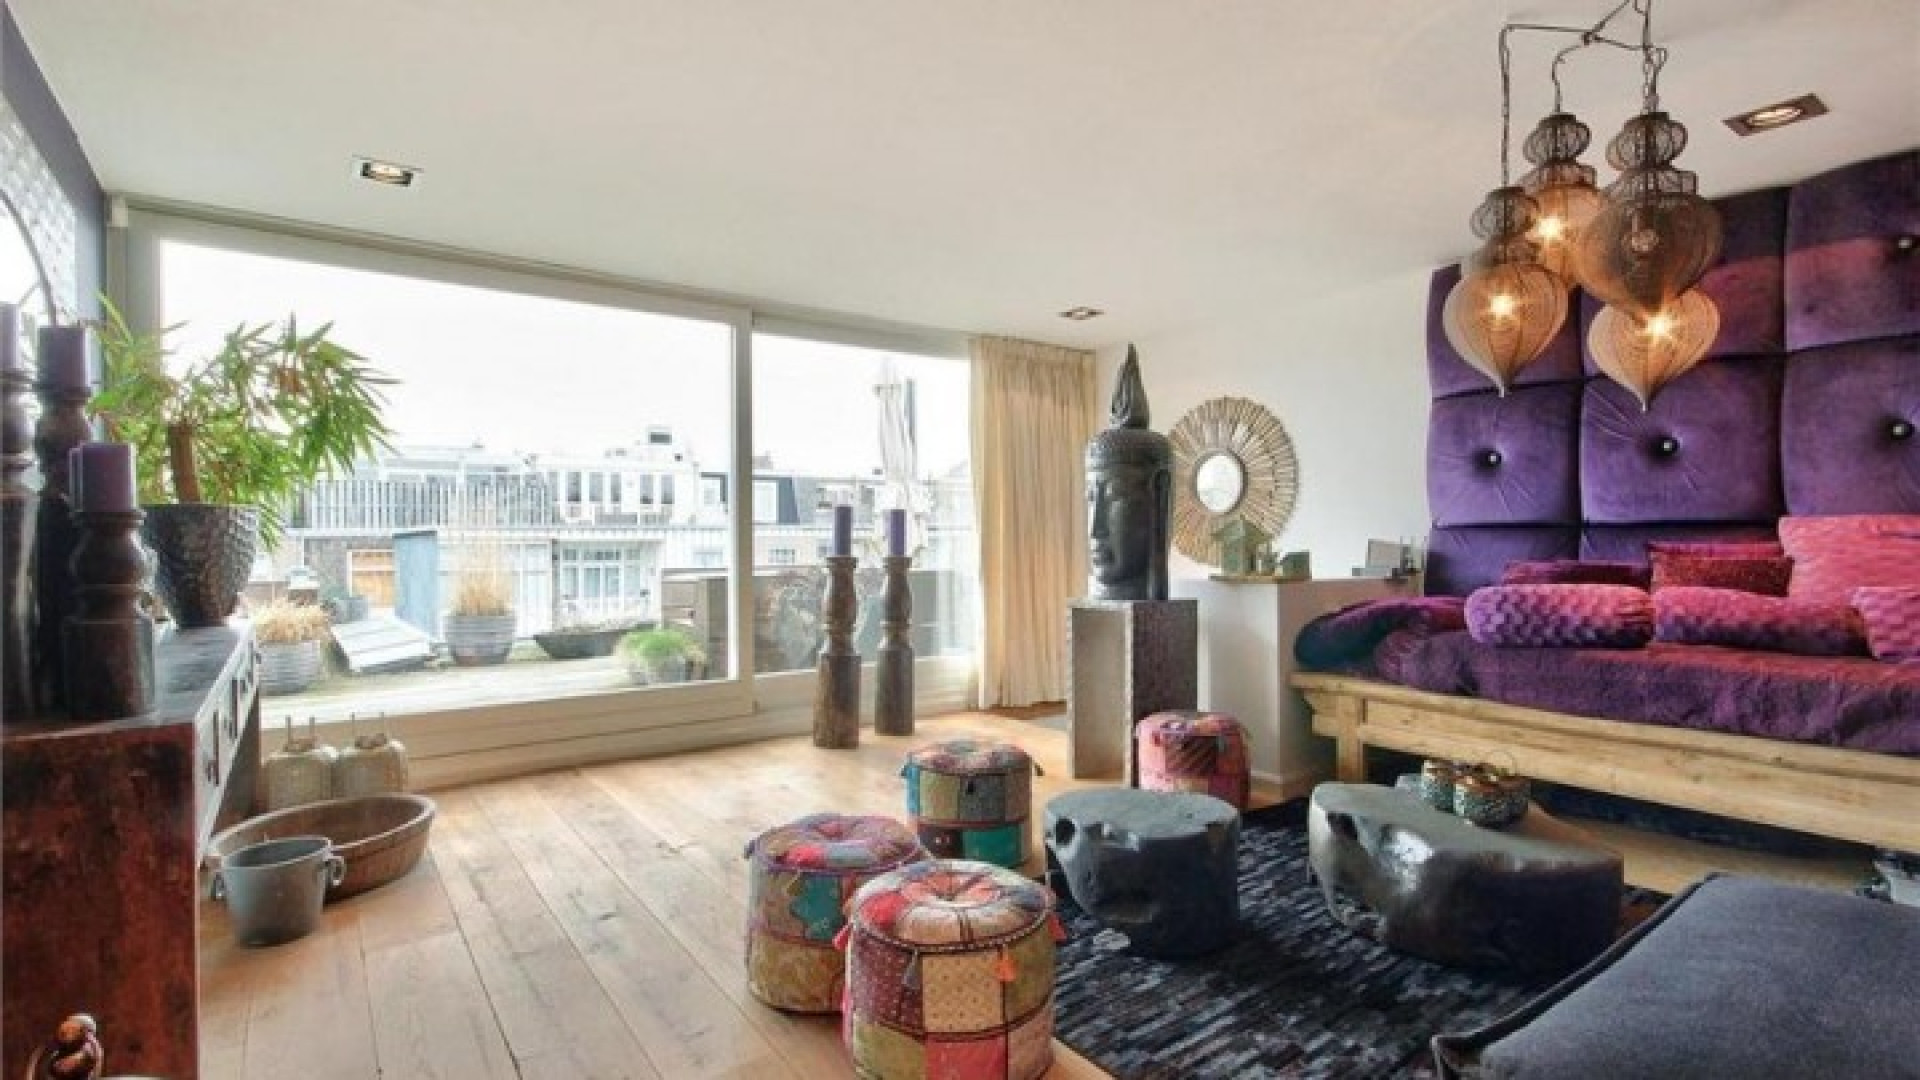 Nicolette KLuijver verkoopt eindelijk haar huis in Amsterdam Zuid. Zie foto's 17